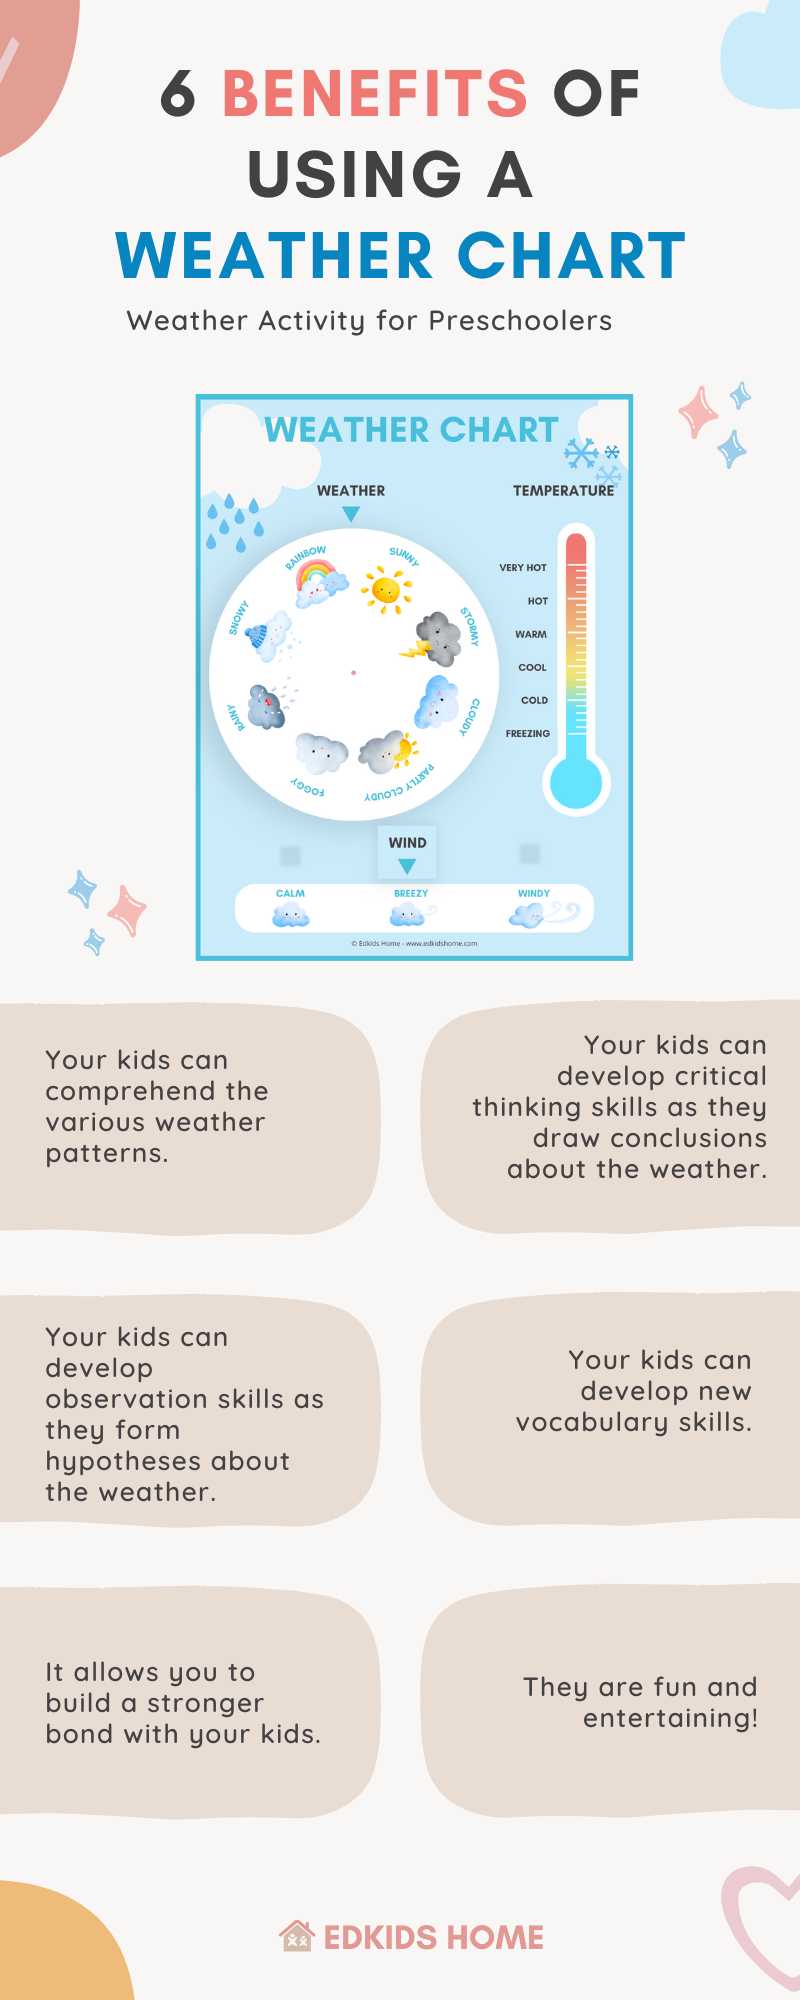 weather activity for preschoolers infographic